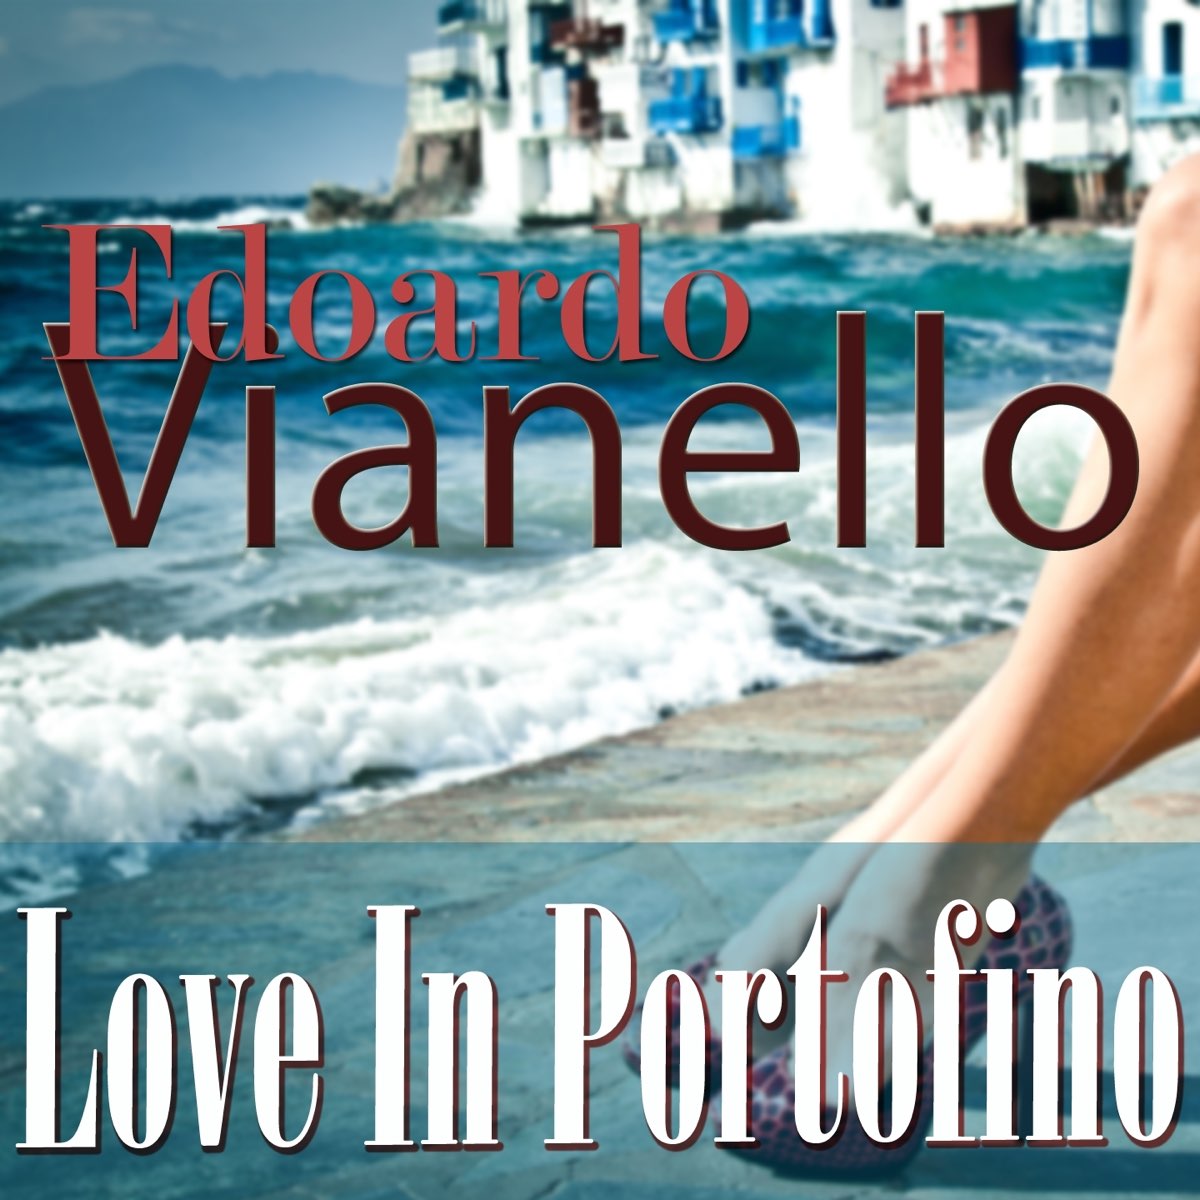 Love in portofino. Love in Portofino (песня). Love in Portofino винил. Лов ин Портофино минус.